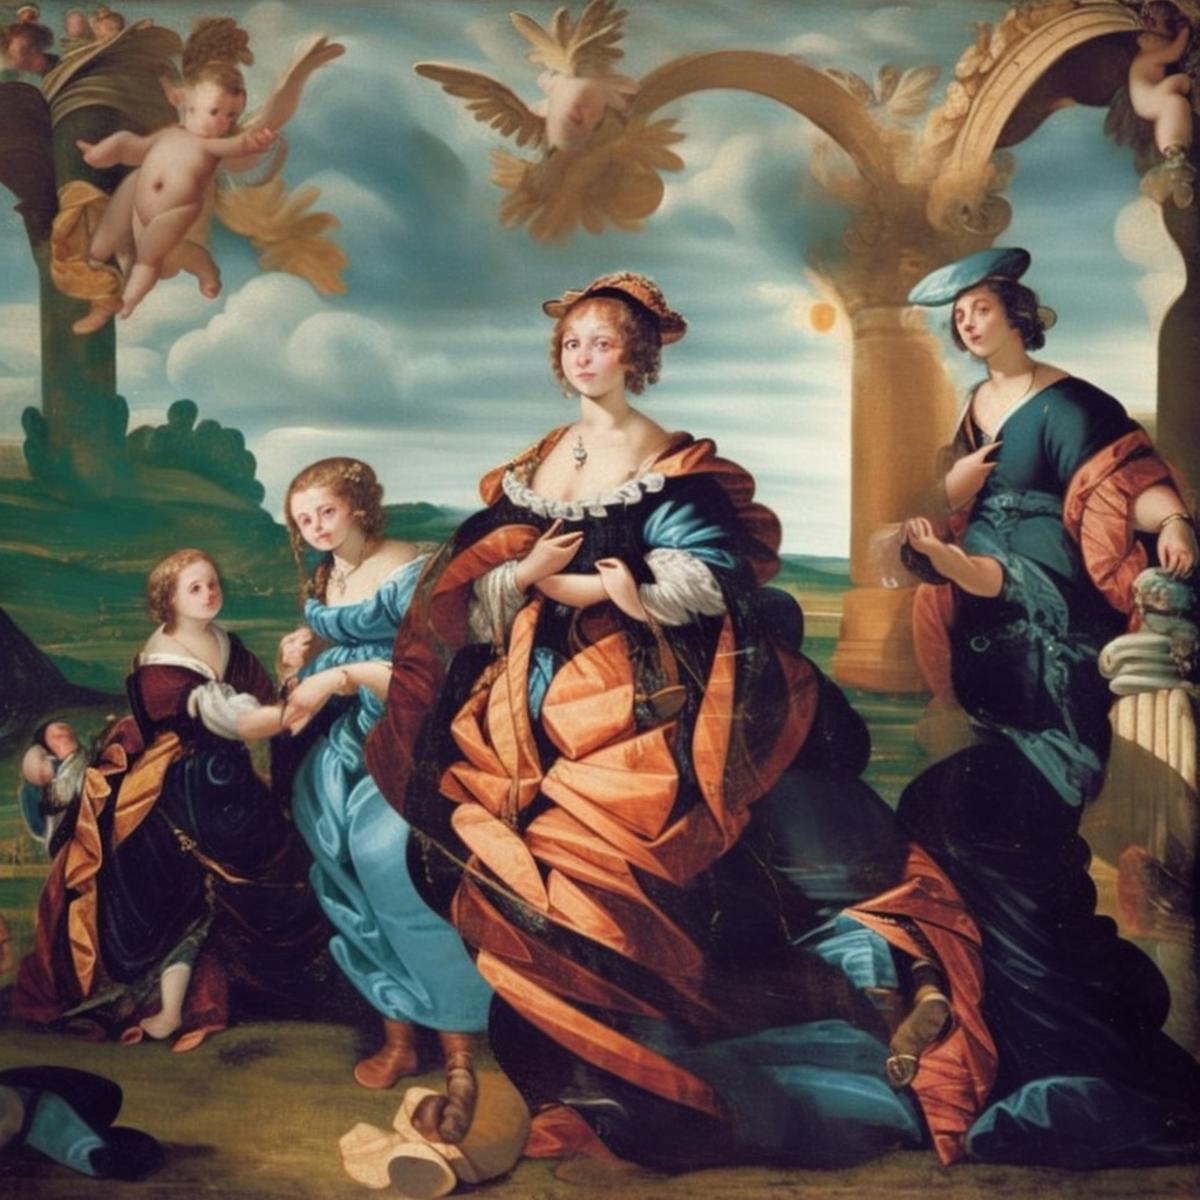 Renaissance Painting v.1 [KIM] image by KKKKKIIIIIIIMMMMM